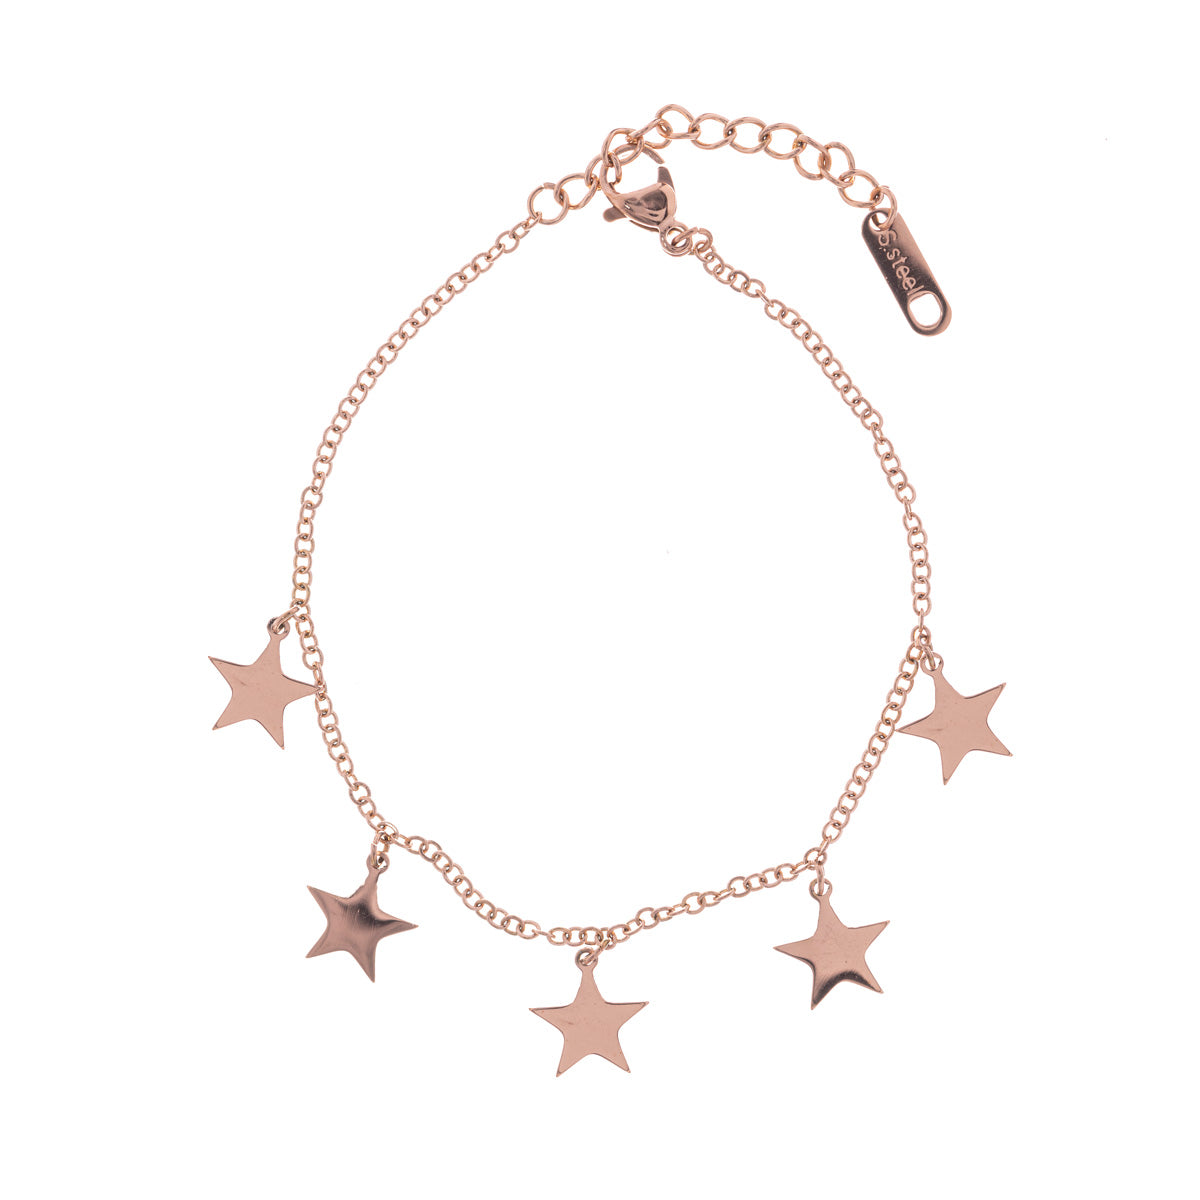 Star bracelets (steel 316L)